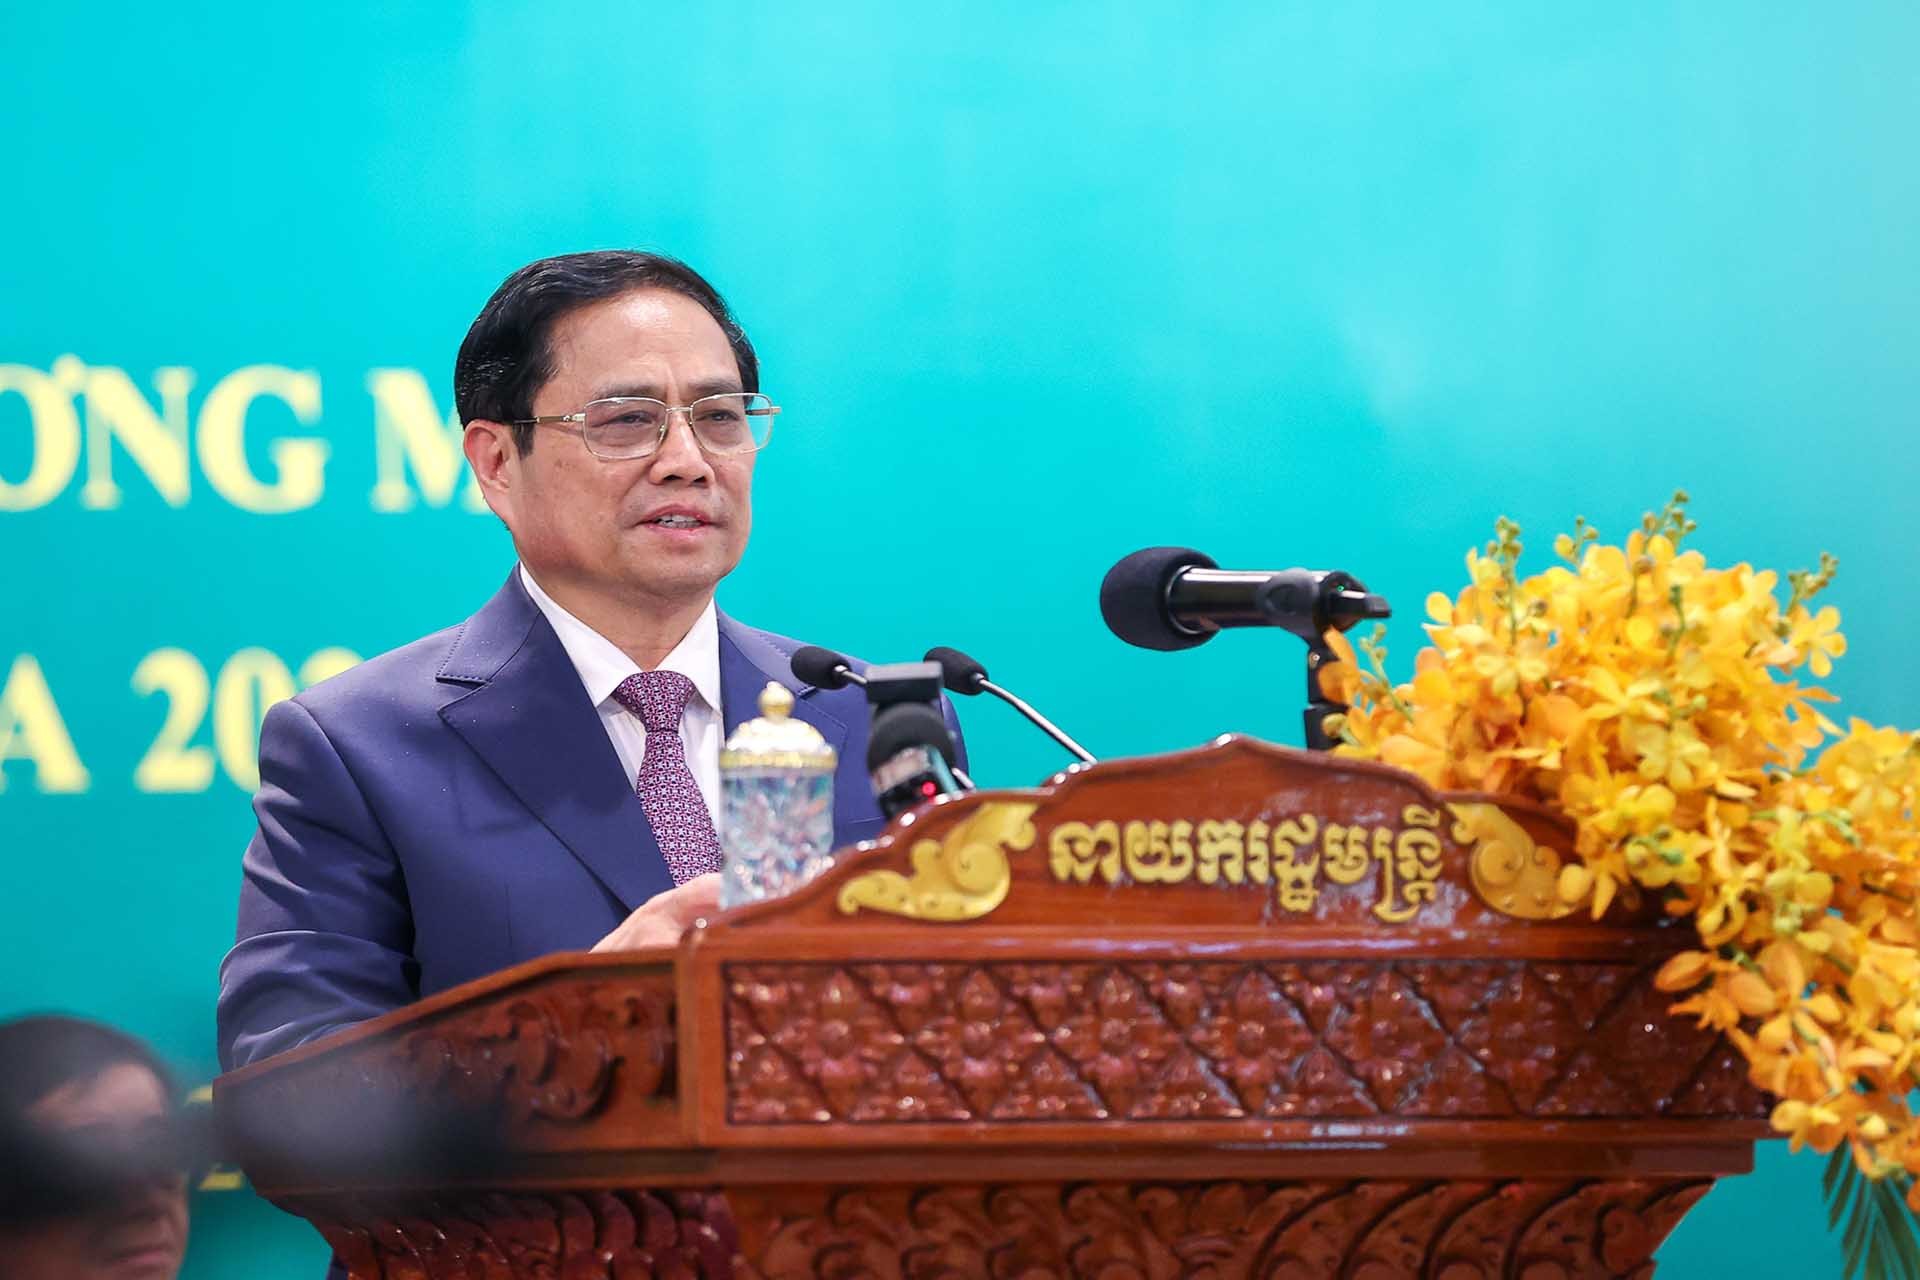 Diễn đàn xúc tiến đầu tư và thương mại Việt Nam-Campuchia